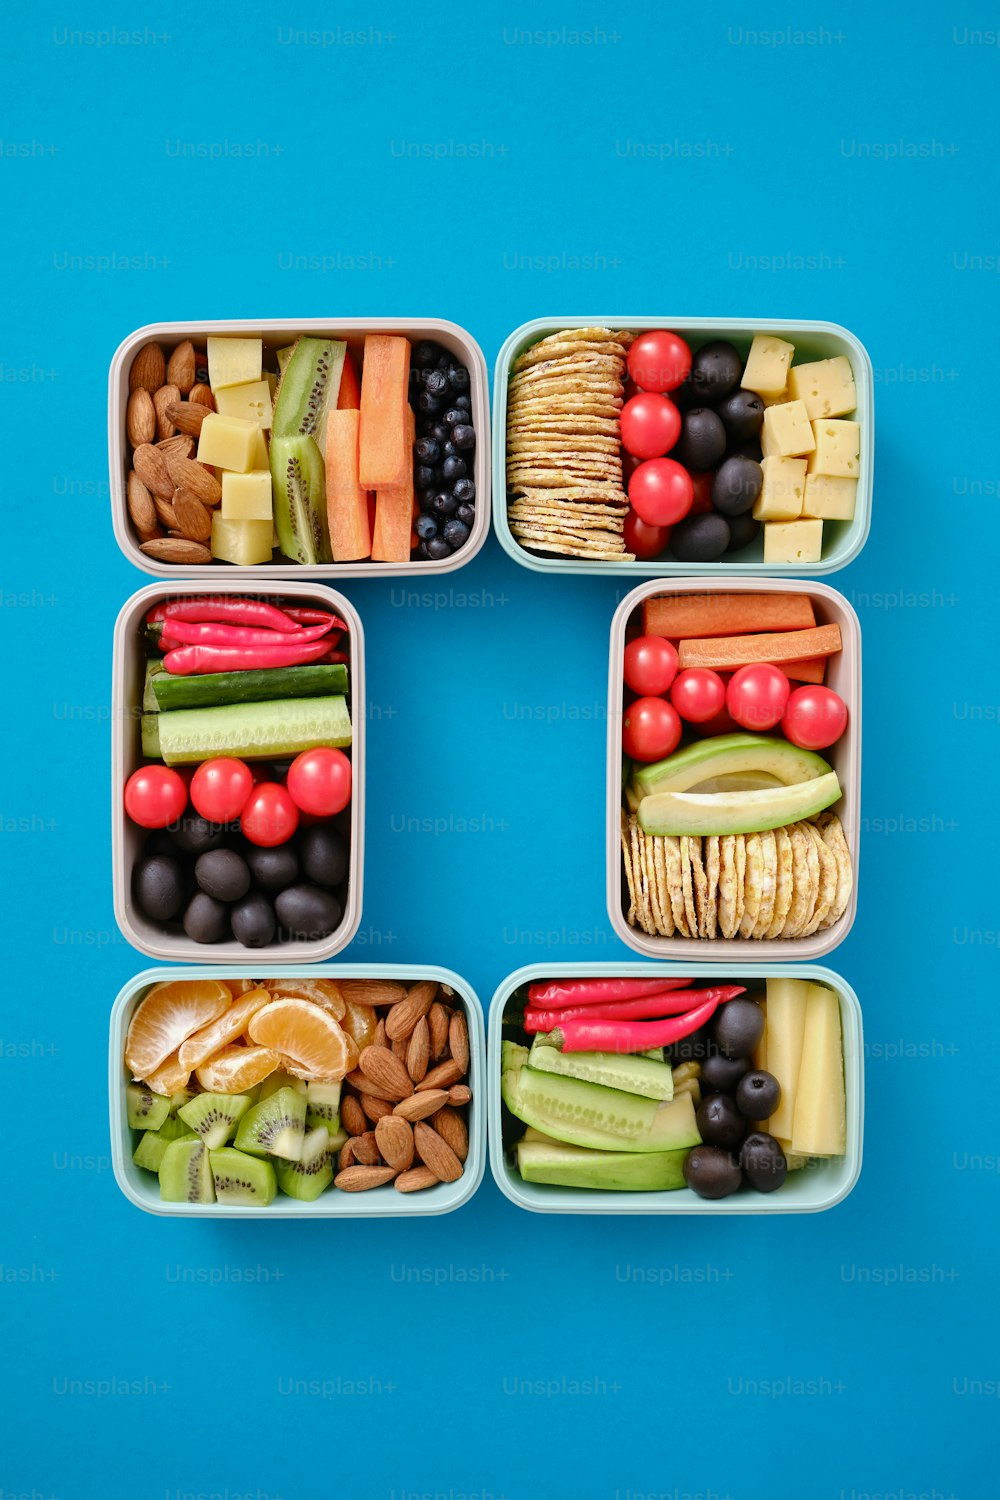 ein Satz von vier Plastikbehältern, die mit verschiedenen Arten von Lebensmitteln gefüllt sind